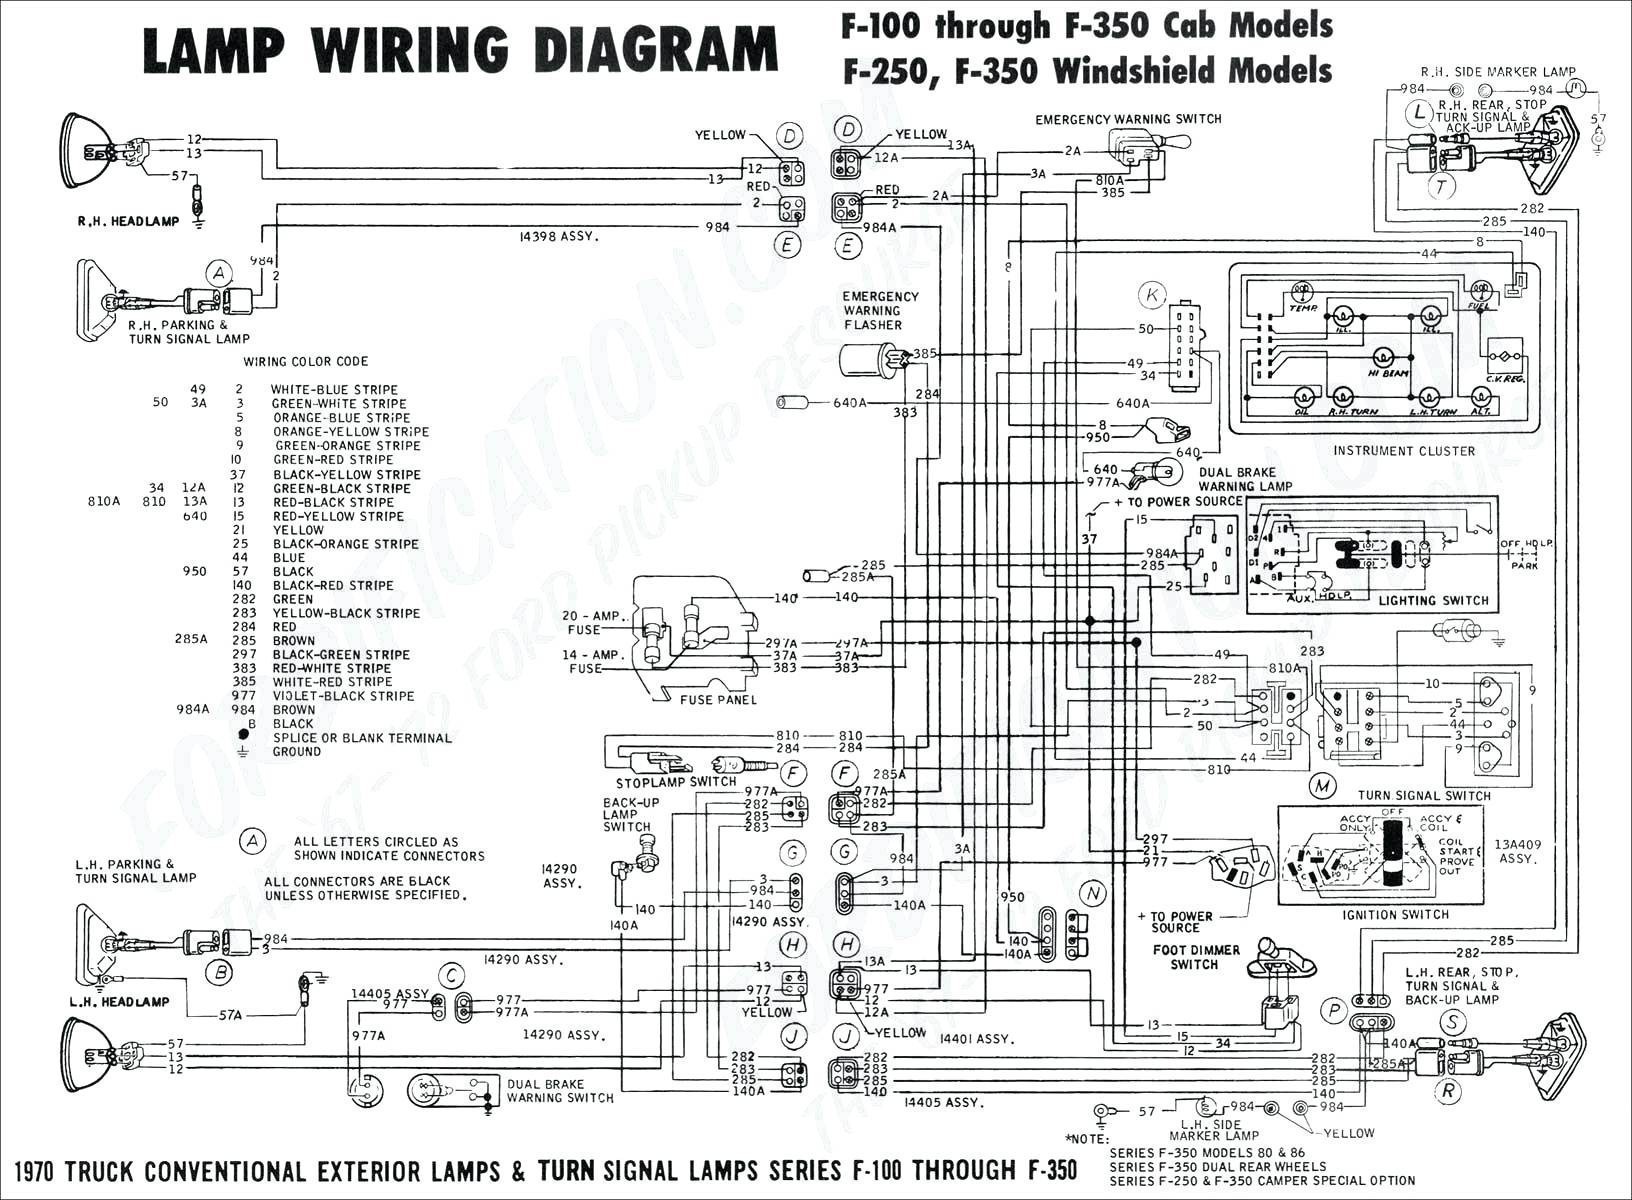 2003 Dodge Caravan Wiring Diagram Simplified Shapes 2002 Dodge 1500 Pcm Wiring Diagram Inspirationa 2003 Dodge